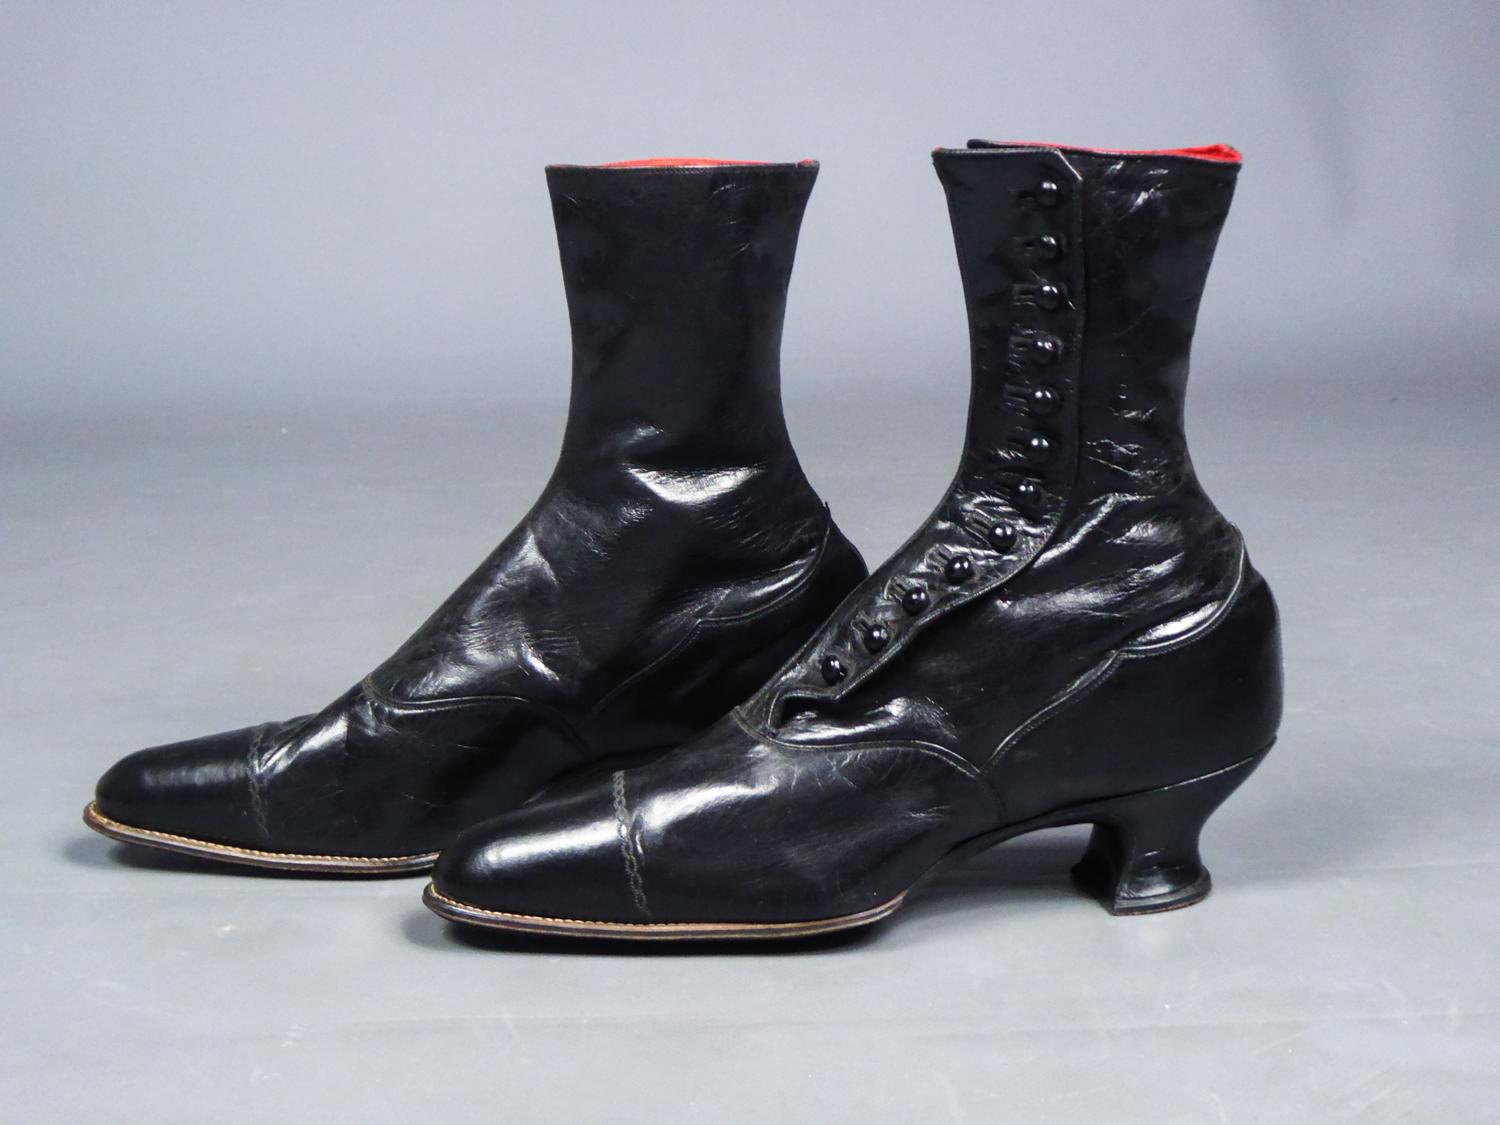 1870s women's shoes